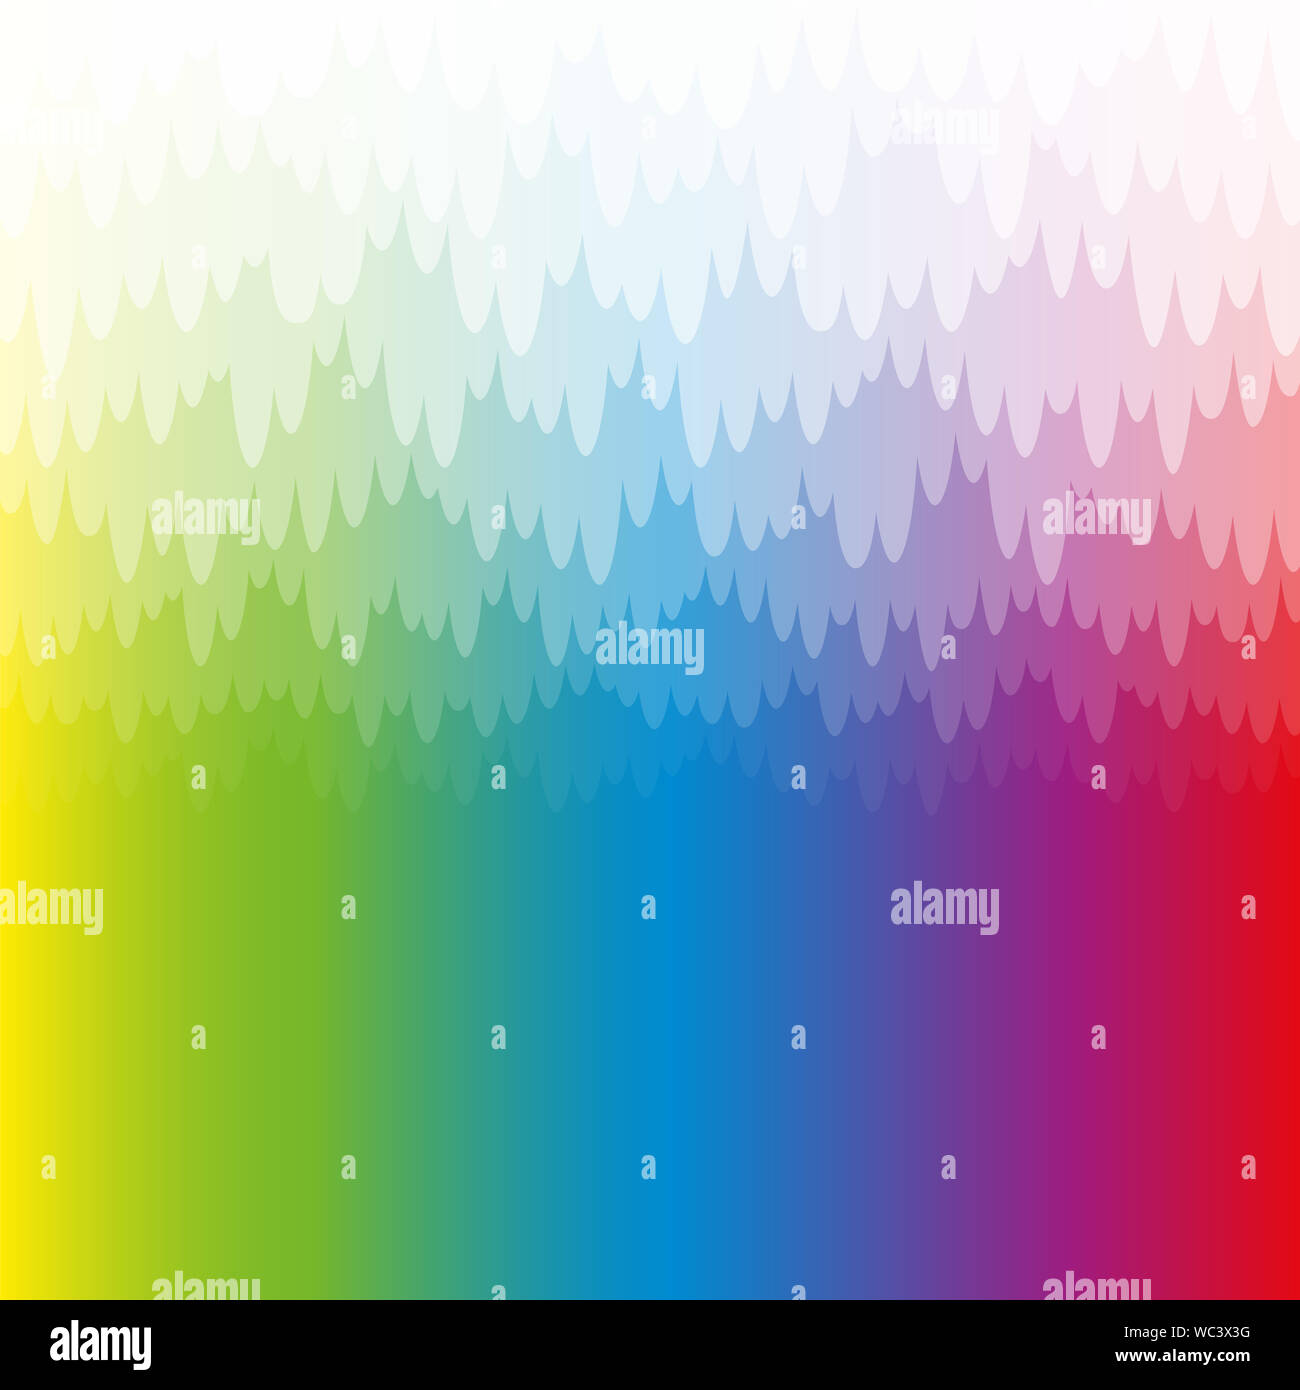 Regenbogenfarbige misty und mystischen Hintergrund mit weißen Anhänger durchscheinend Bank von Haze. Spektralen Farben, quadratischen Format. Stockfoto